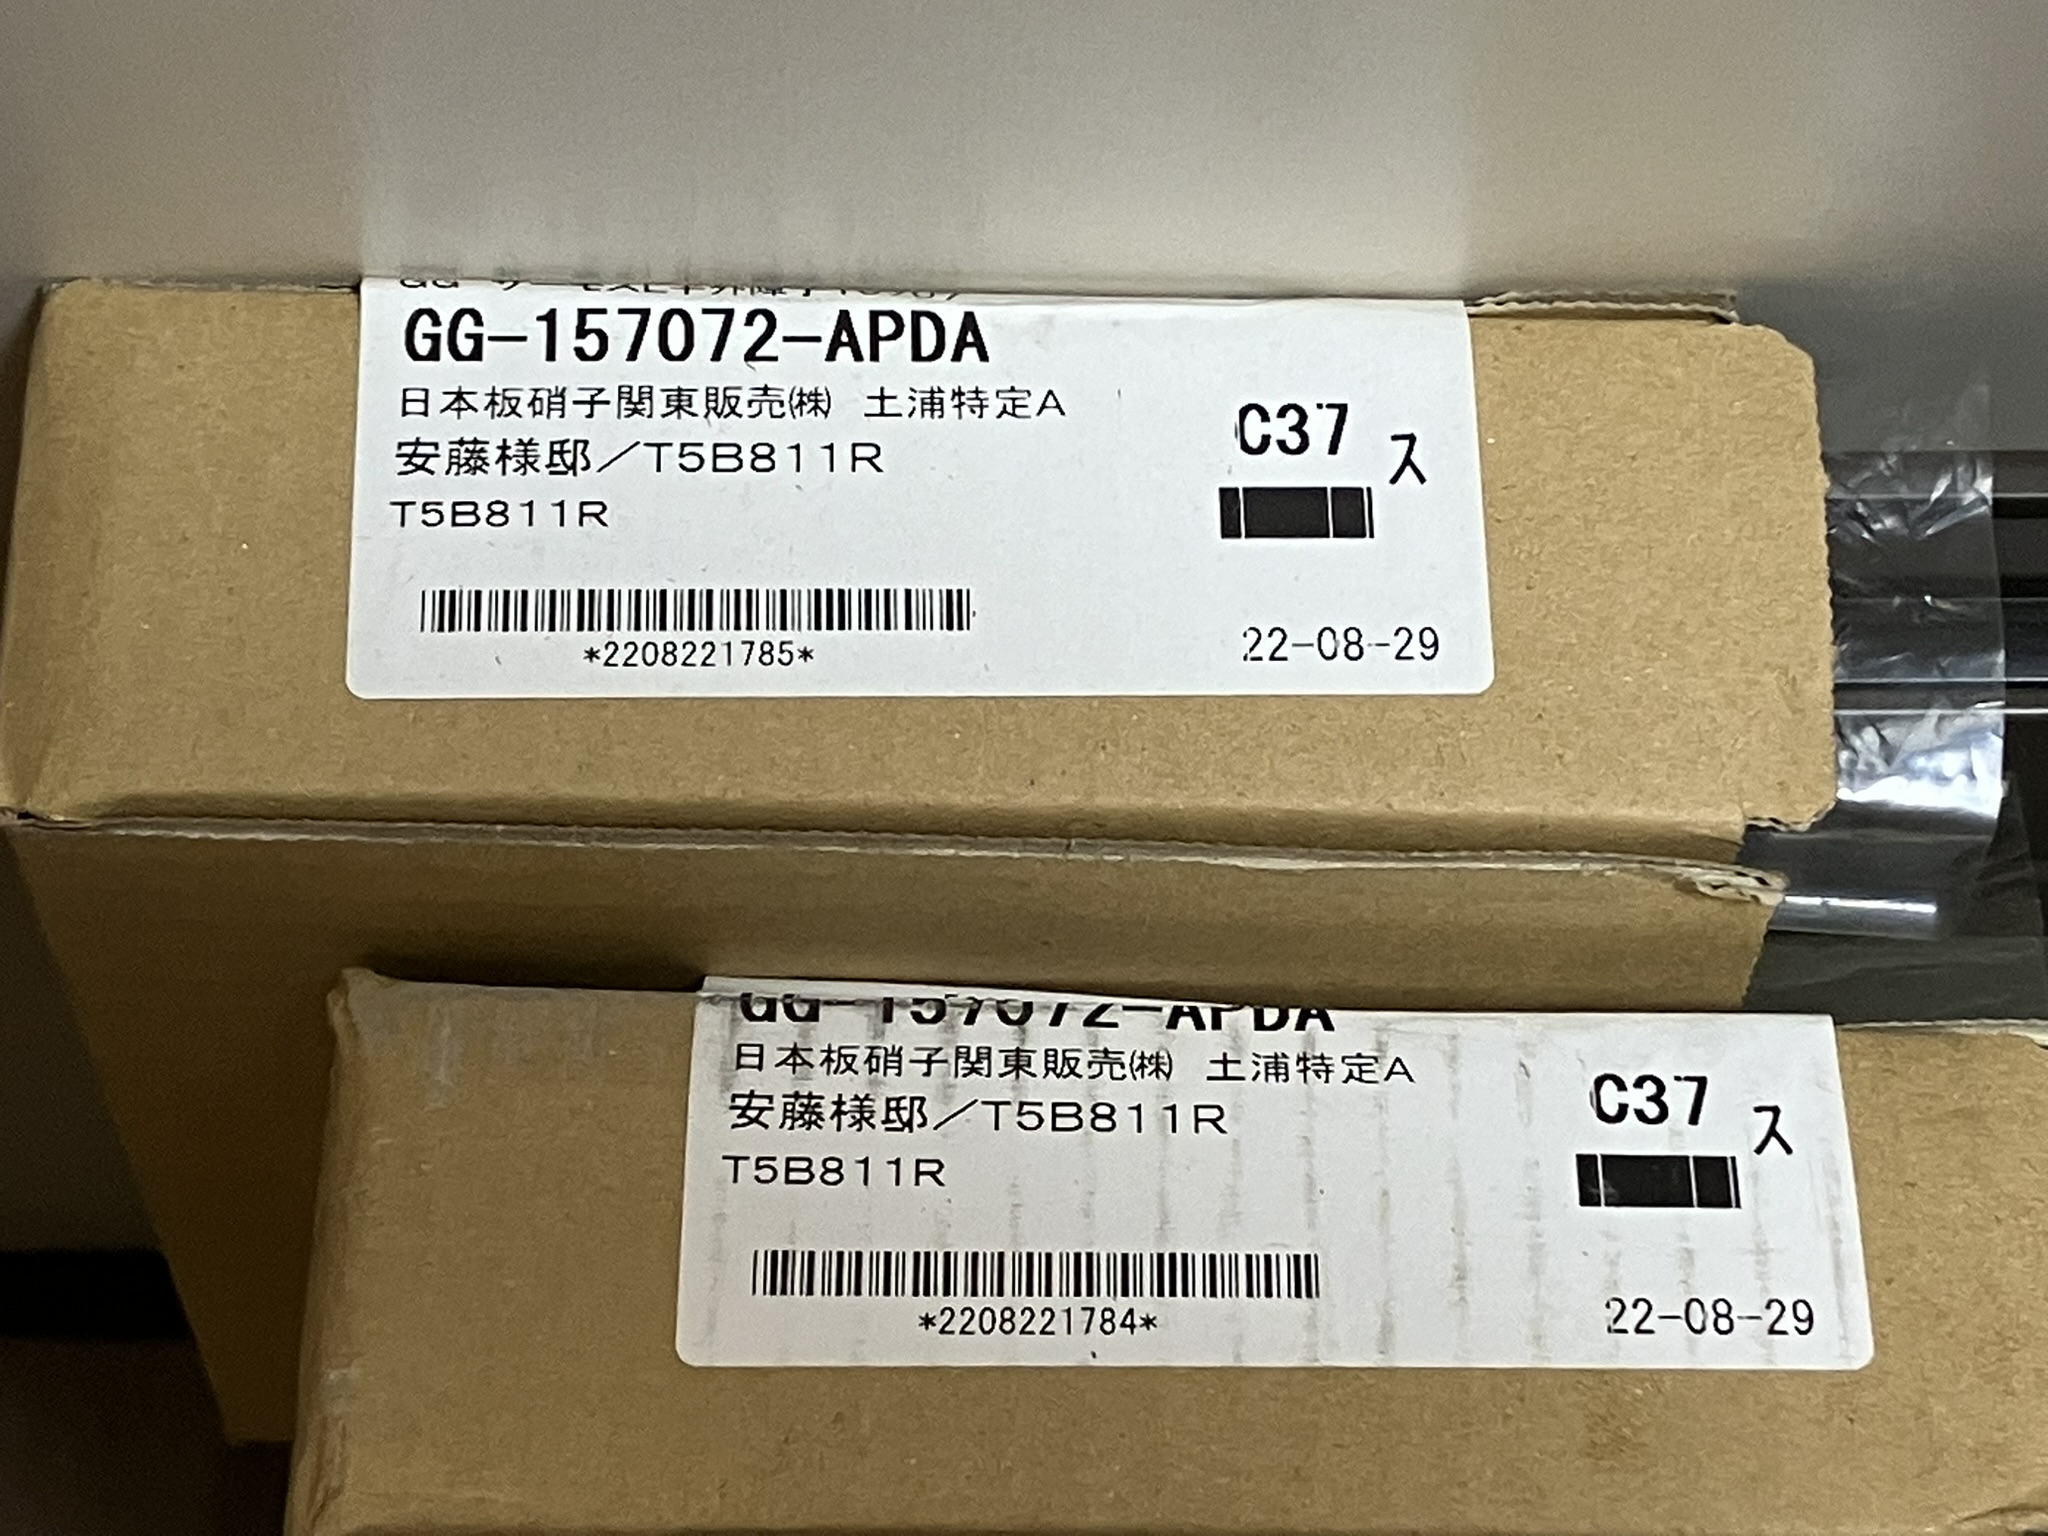 GG-157072-APDA